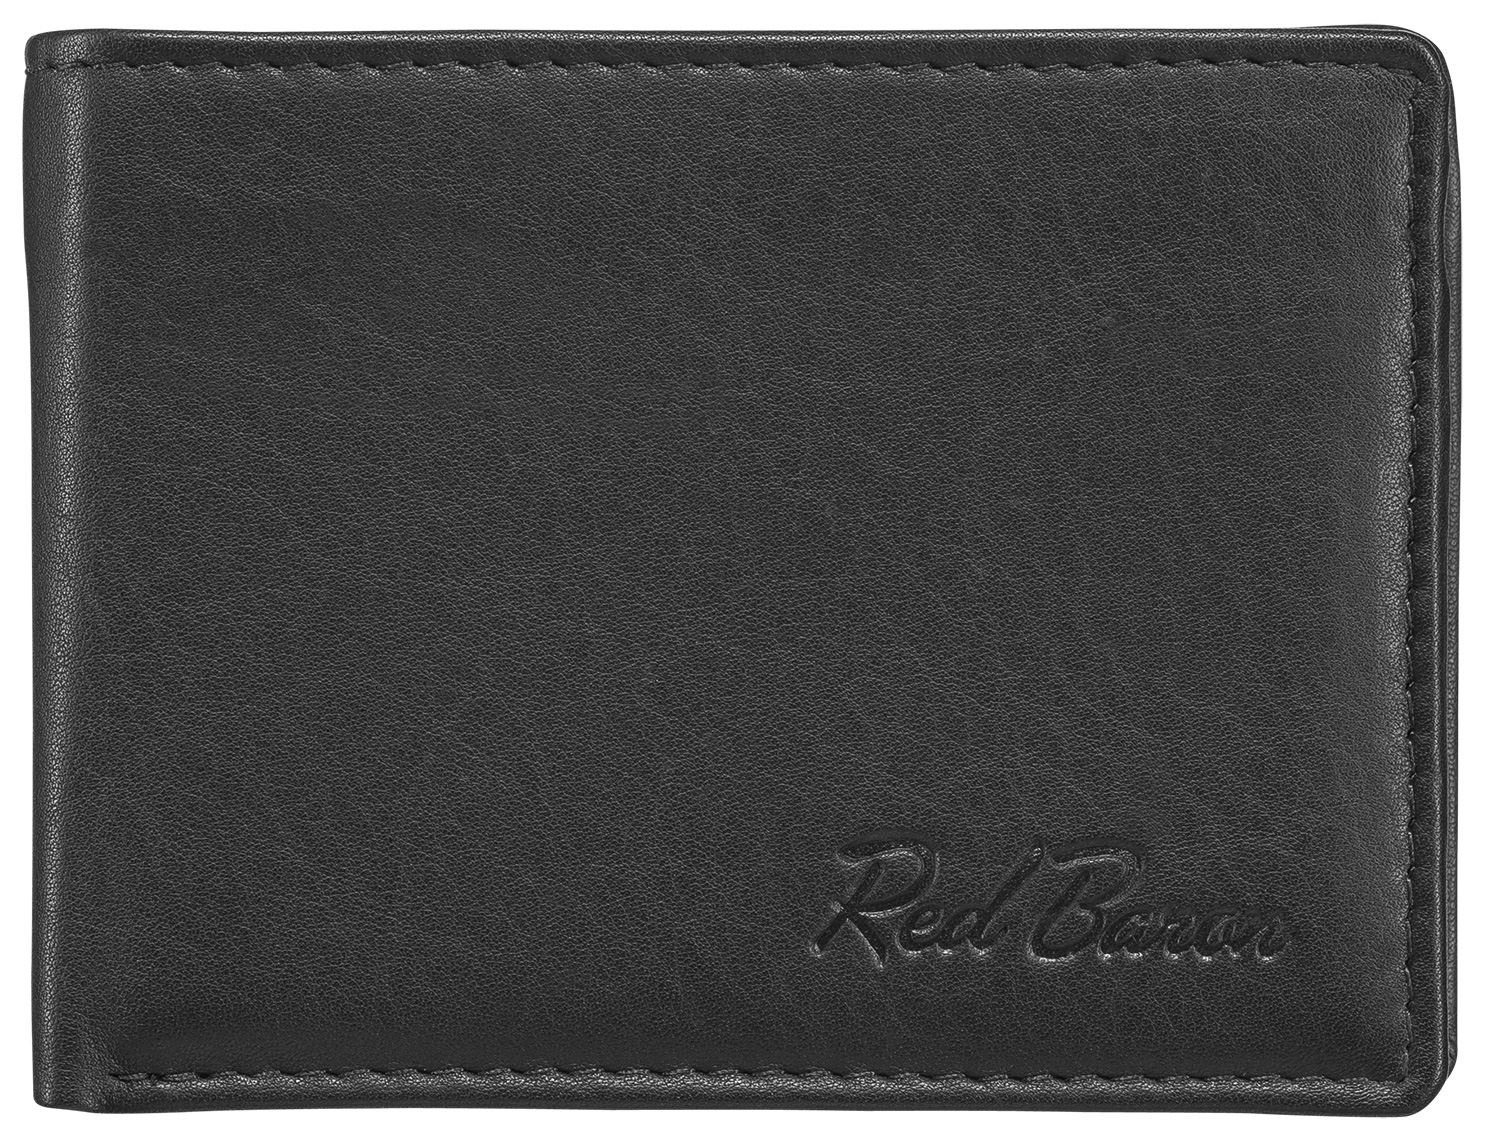 Druckknopf RB-WT-001-01, 1-fach Geldbörse mit Red Baron Kreditkartenfächer, klappbar, Münzfach